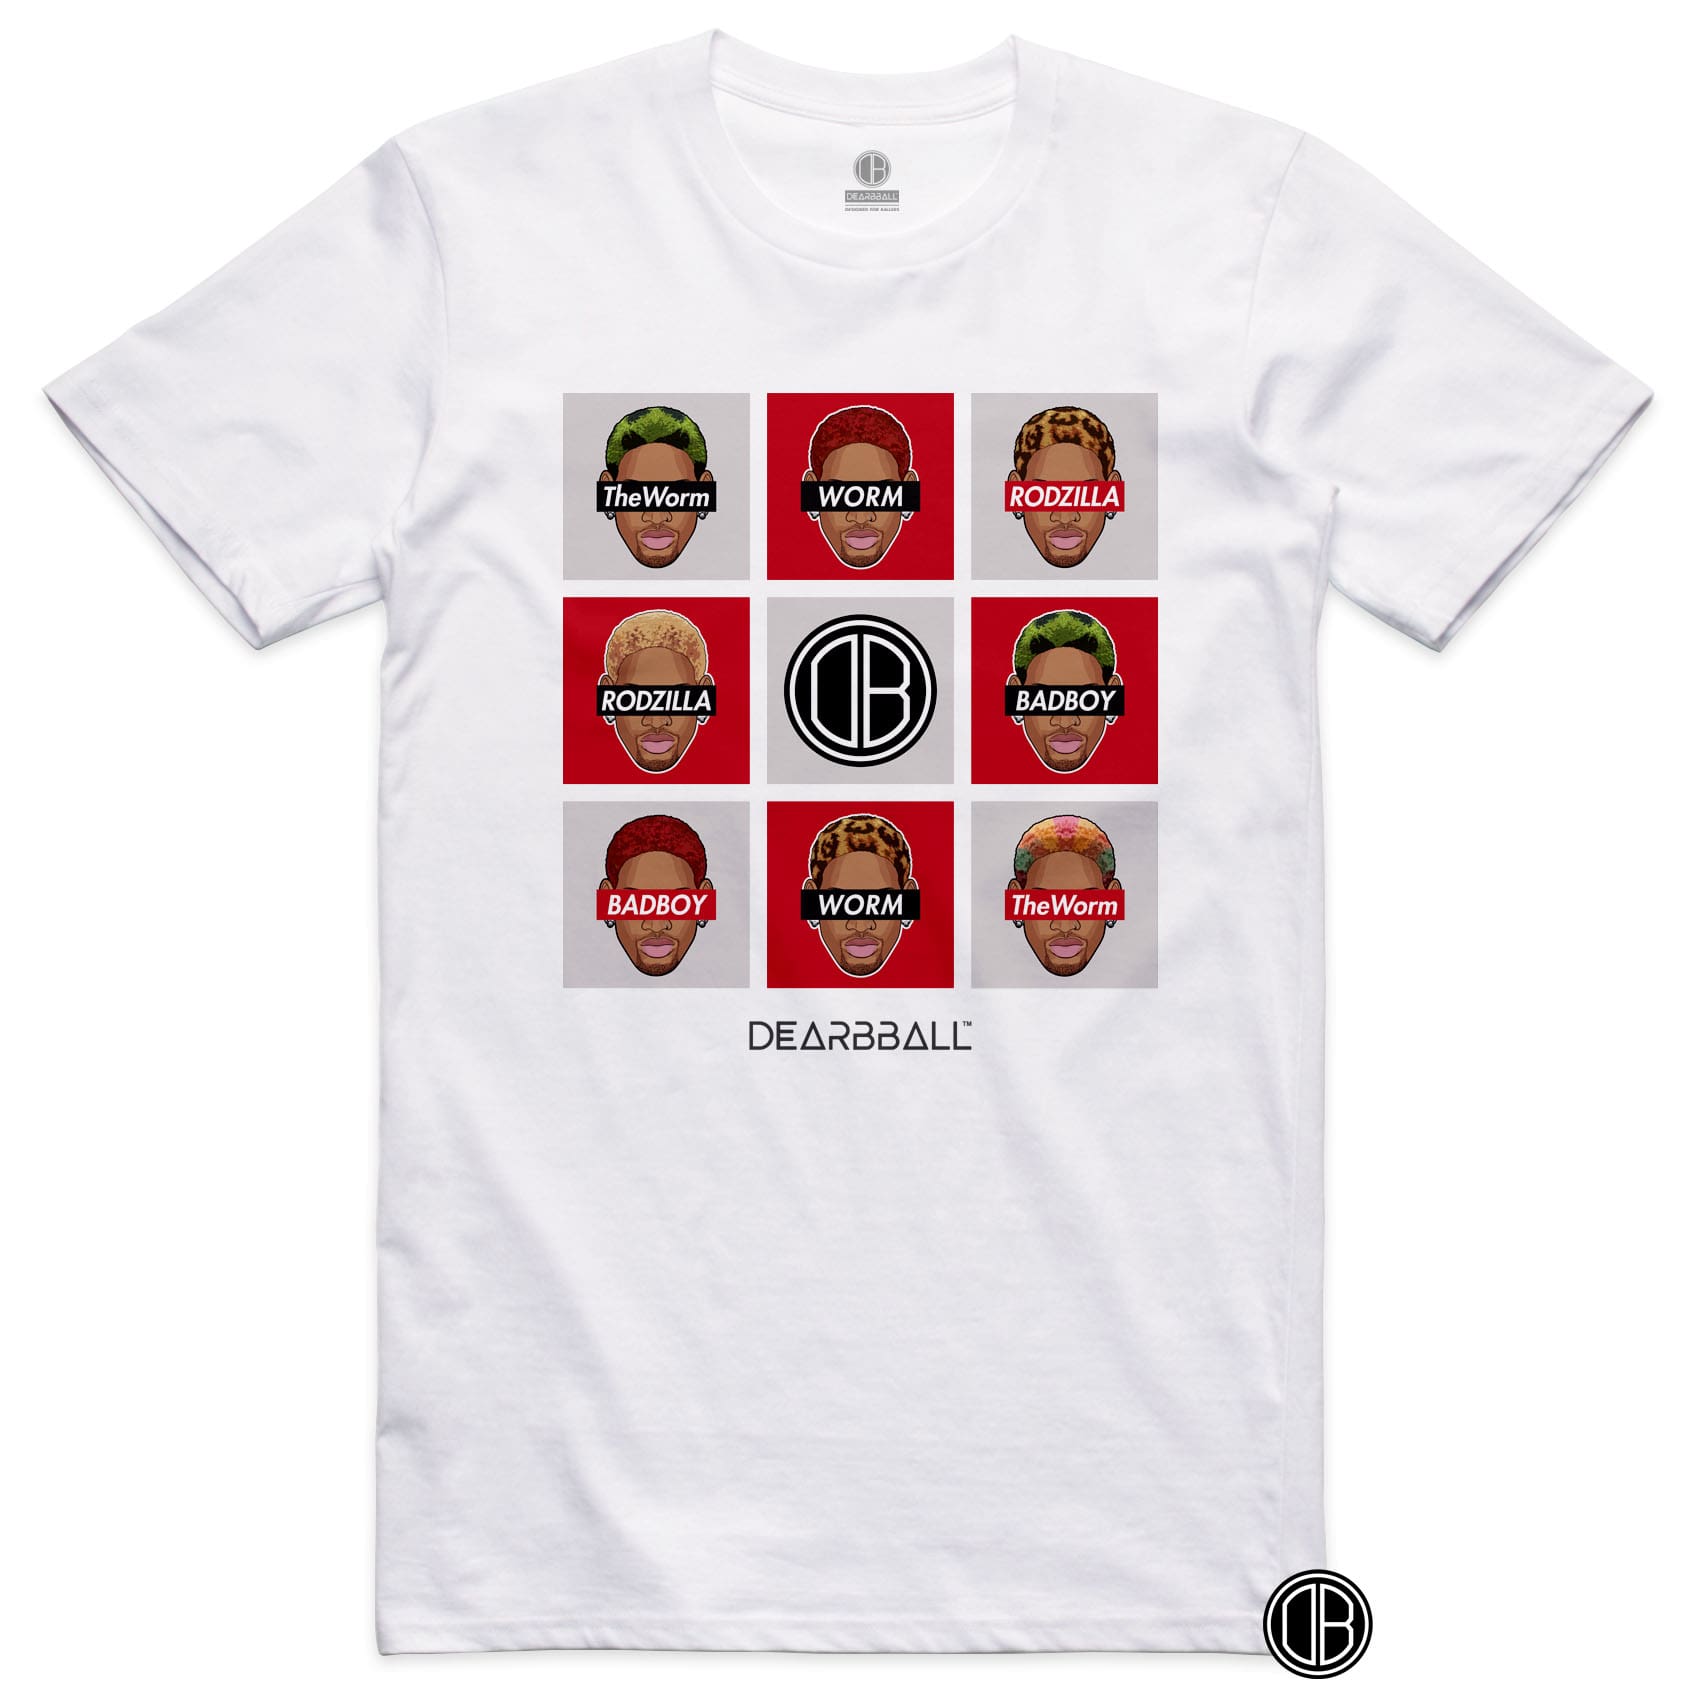 DearBBall T-Shirt - The WORM Legend Edition